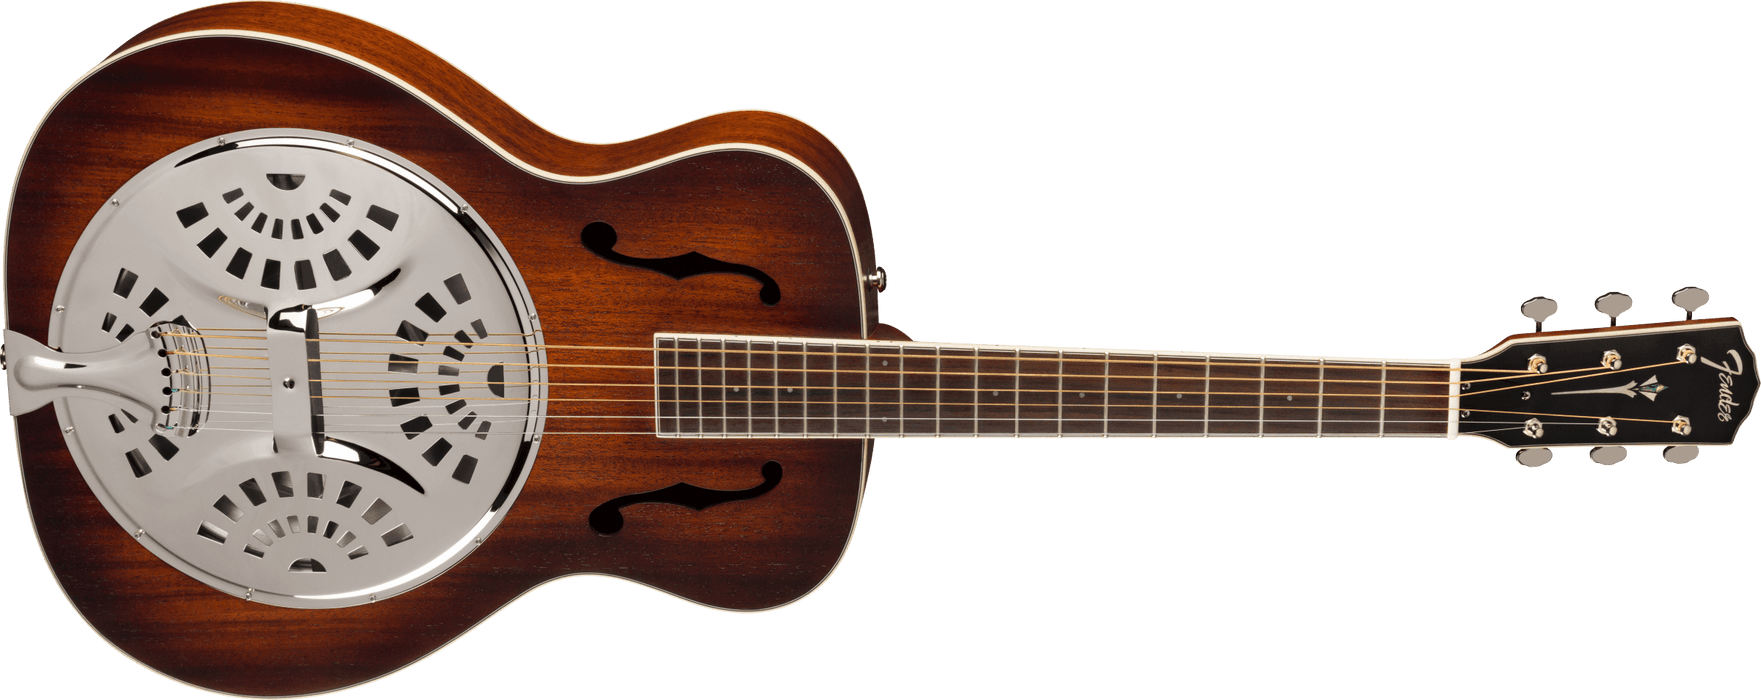 Fender PR-180E Resonator, Walnut Fingerboard - Aged Cognac Burst